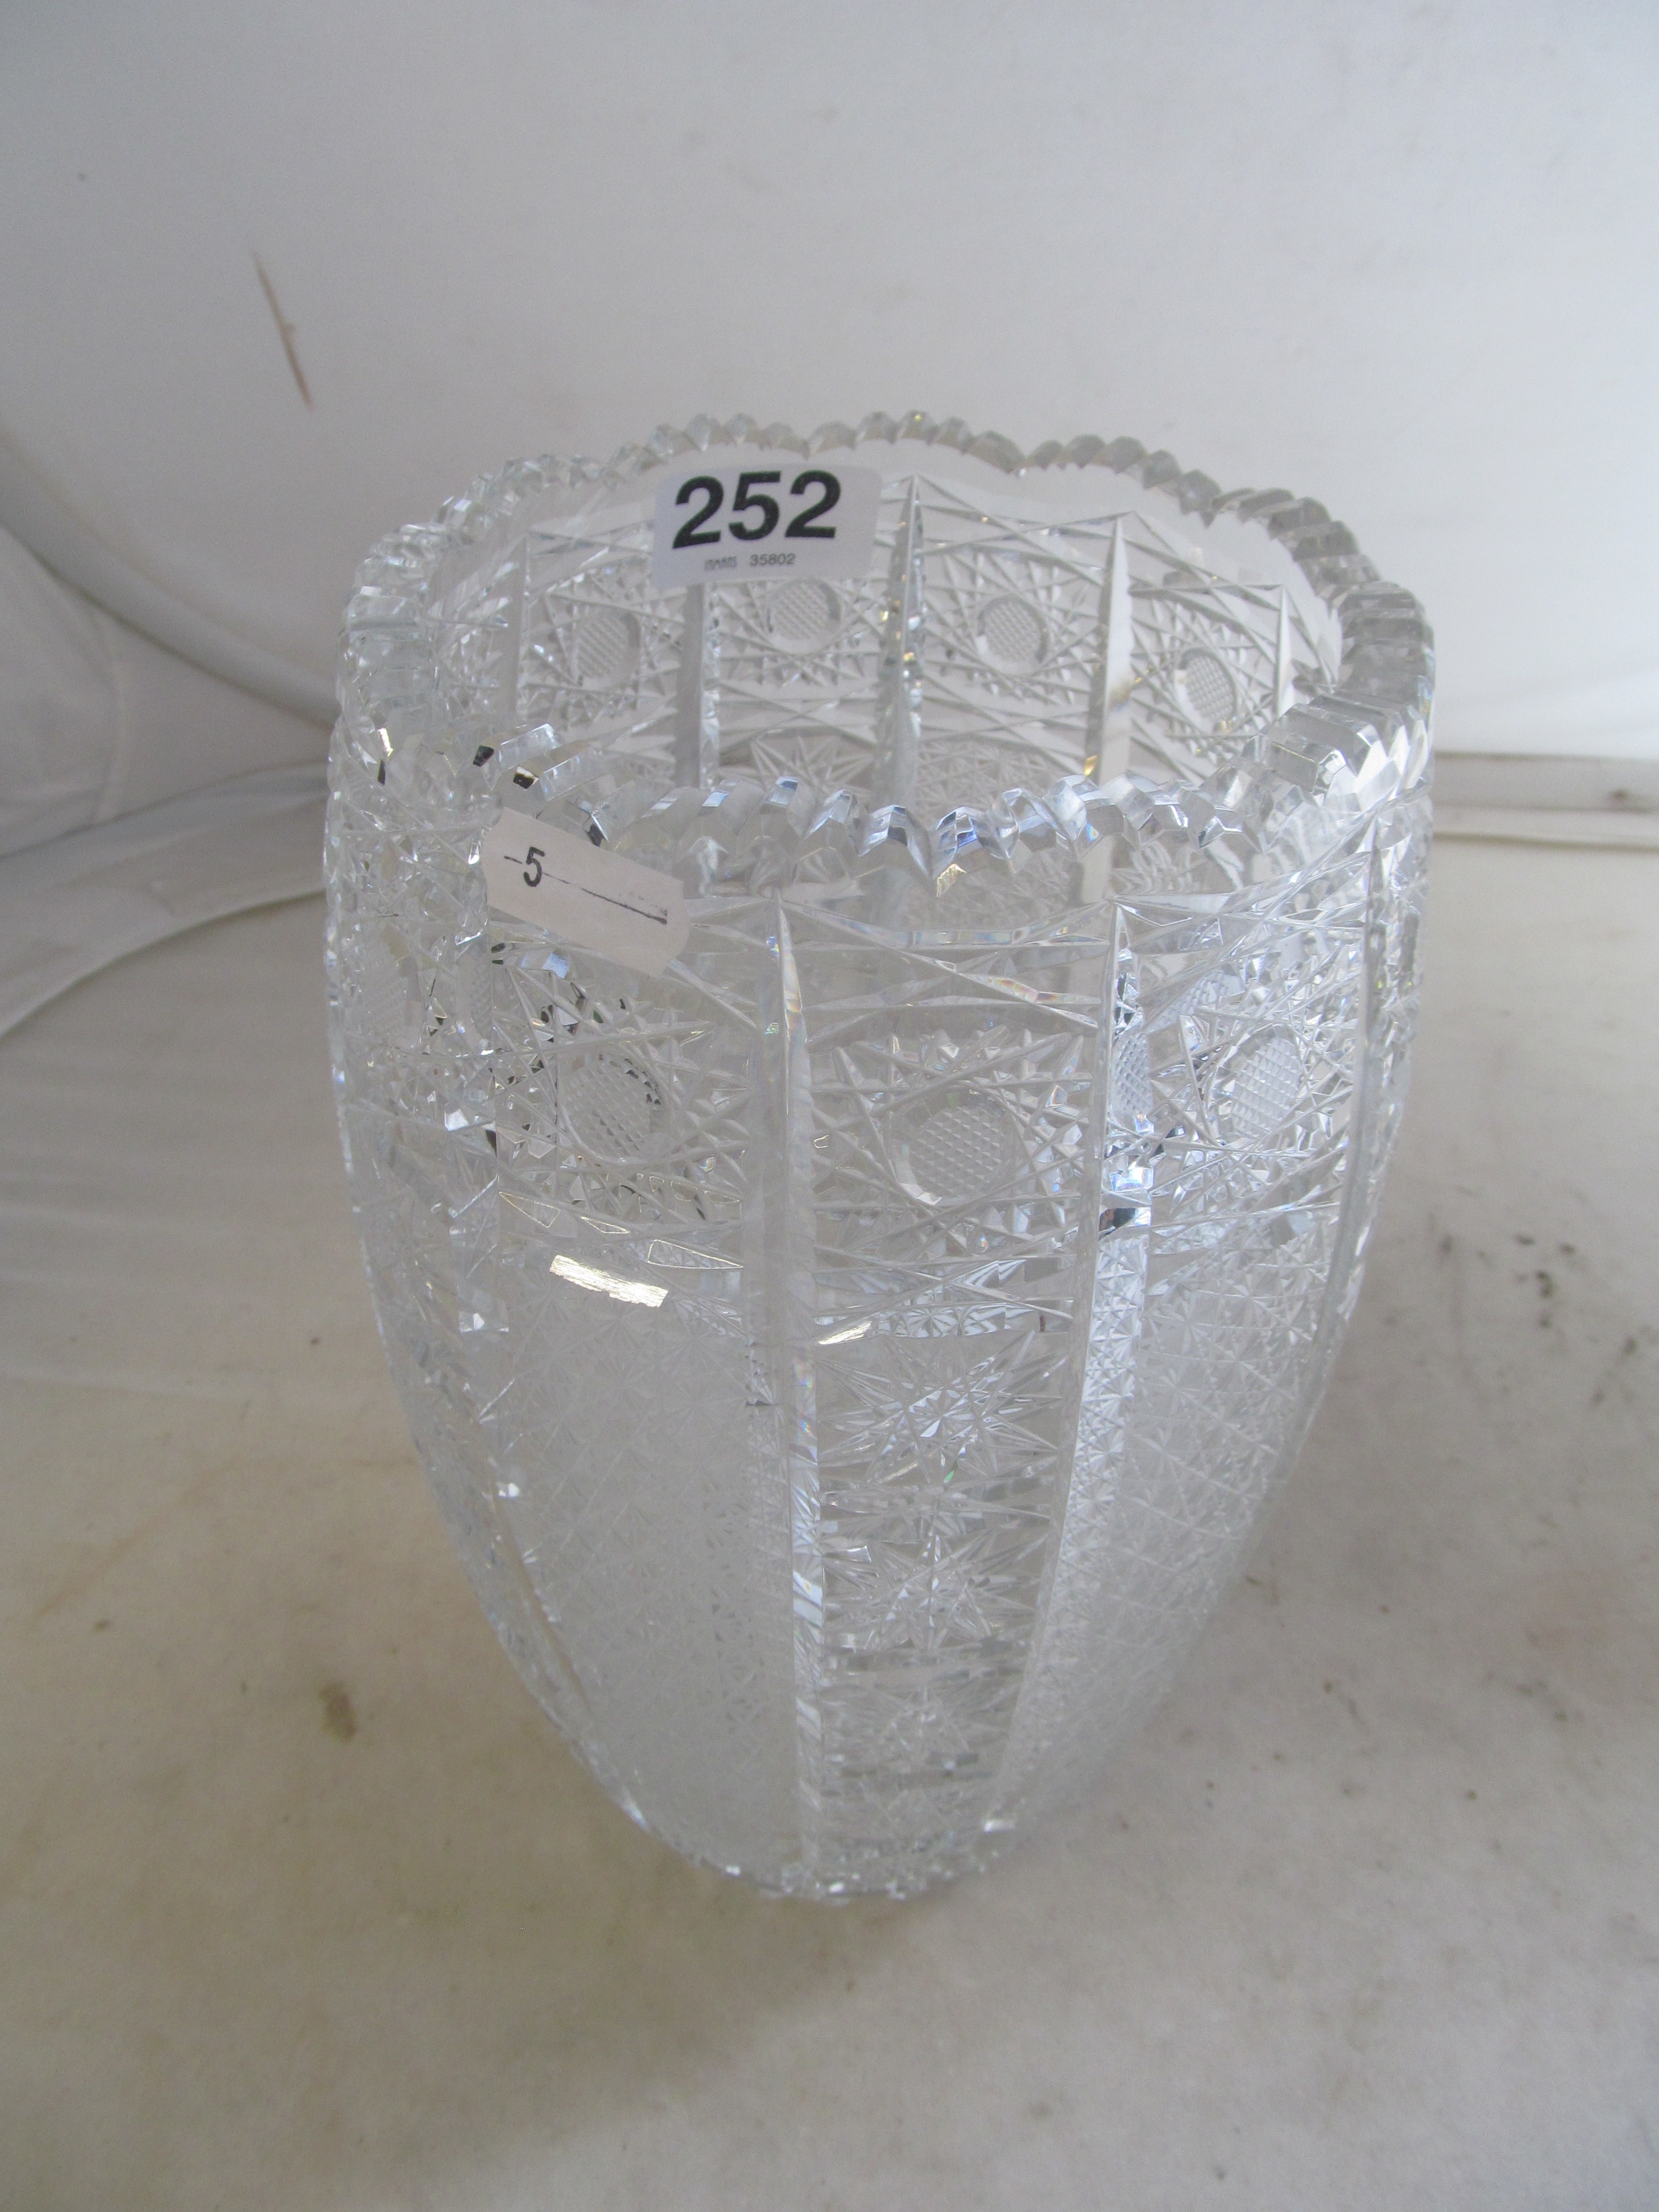 A large cut glass vase